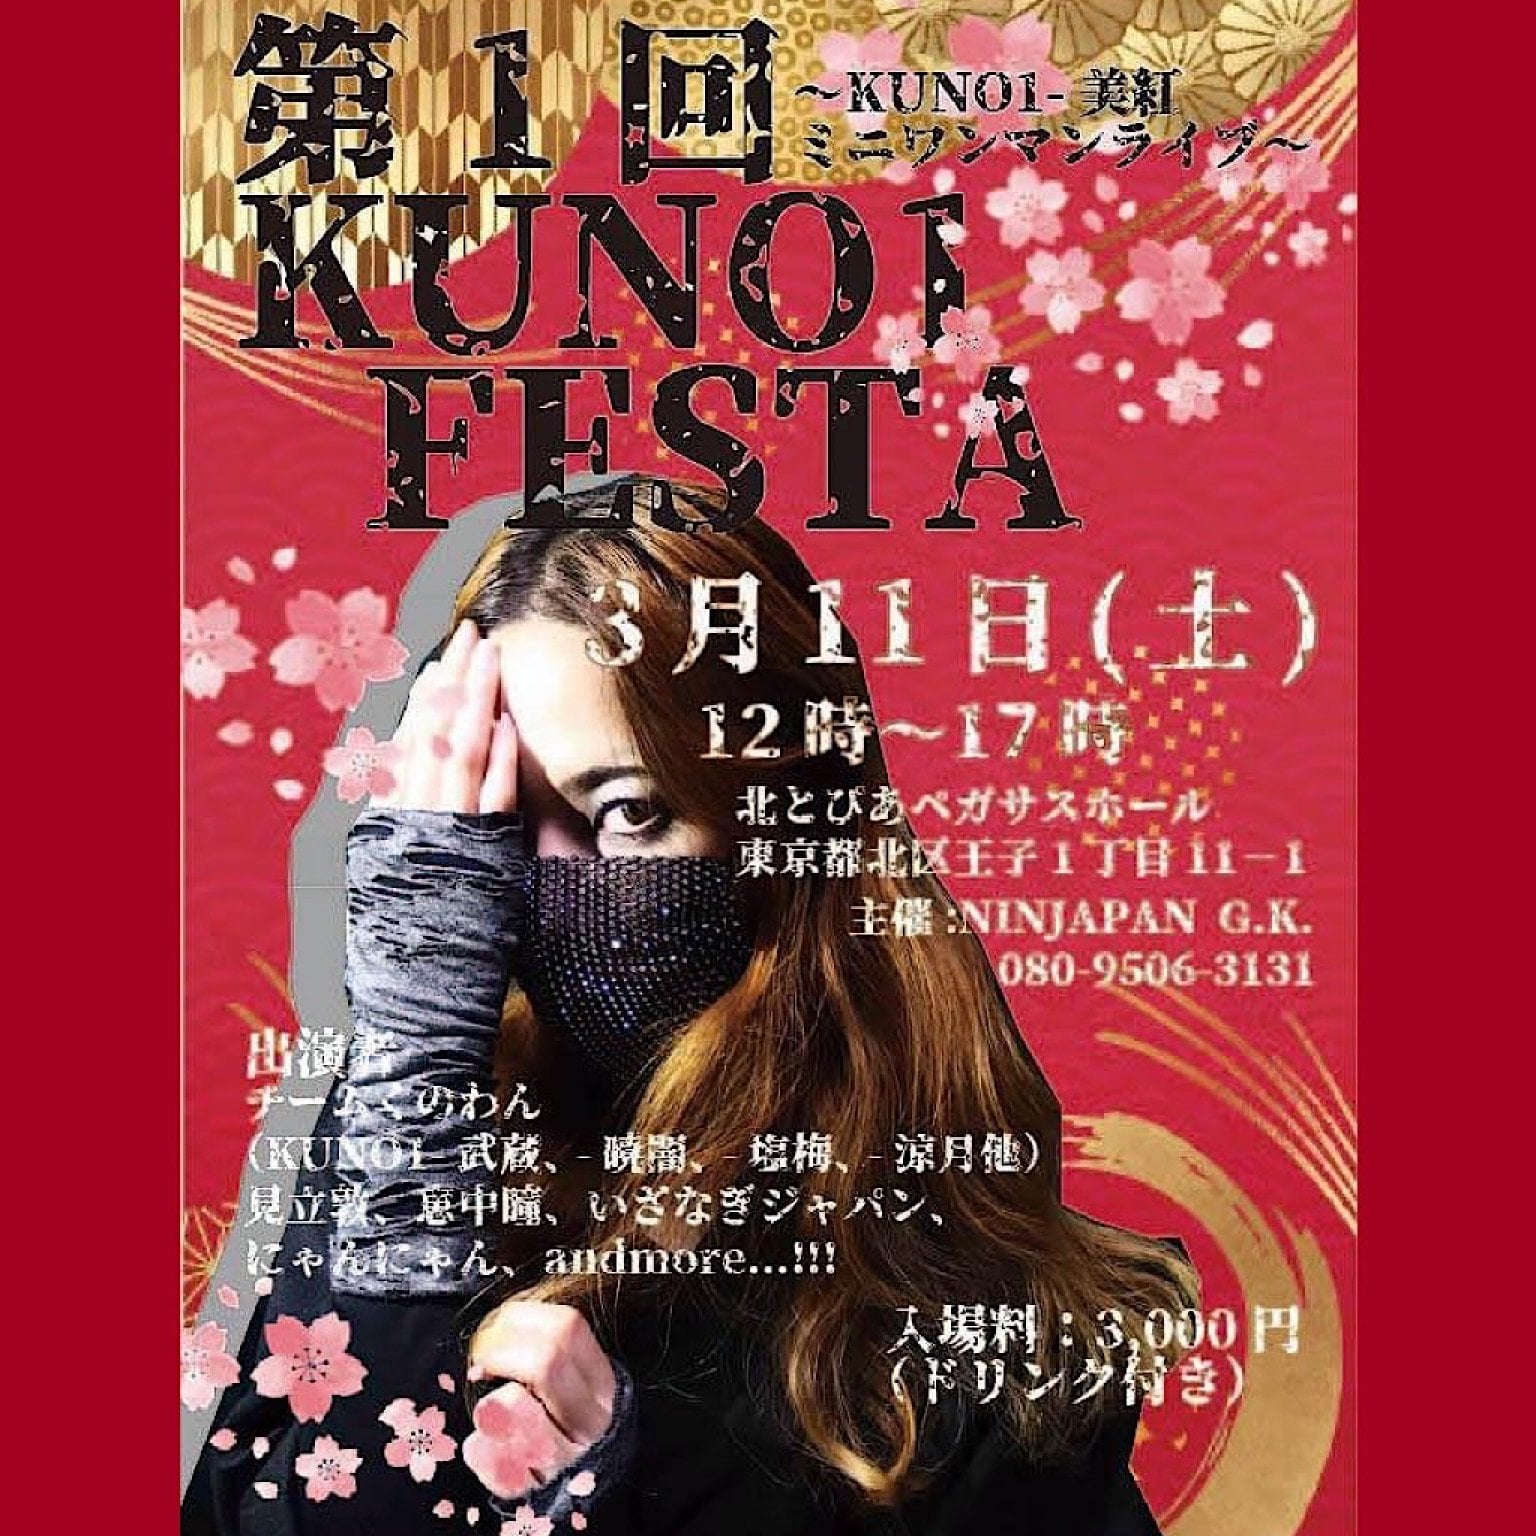 3/11(土)第1回KUNO1 FESTA by NINJAPAN